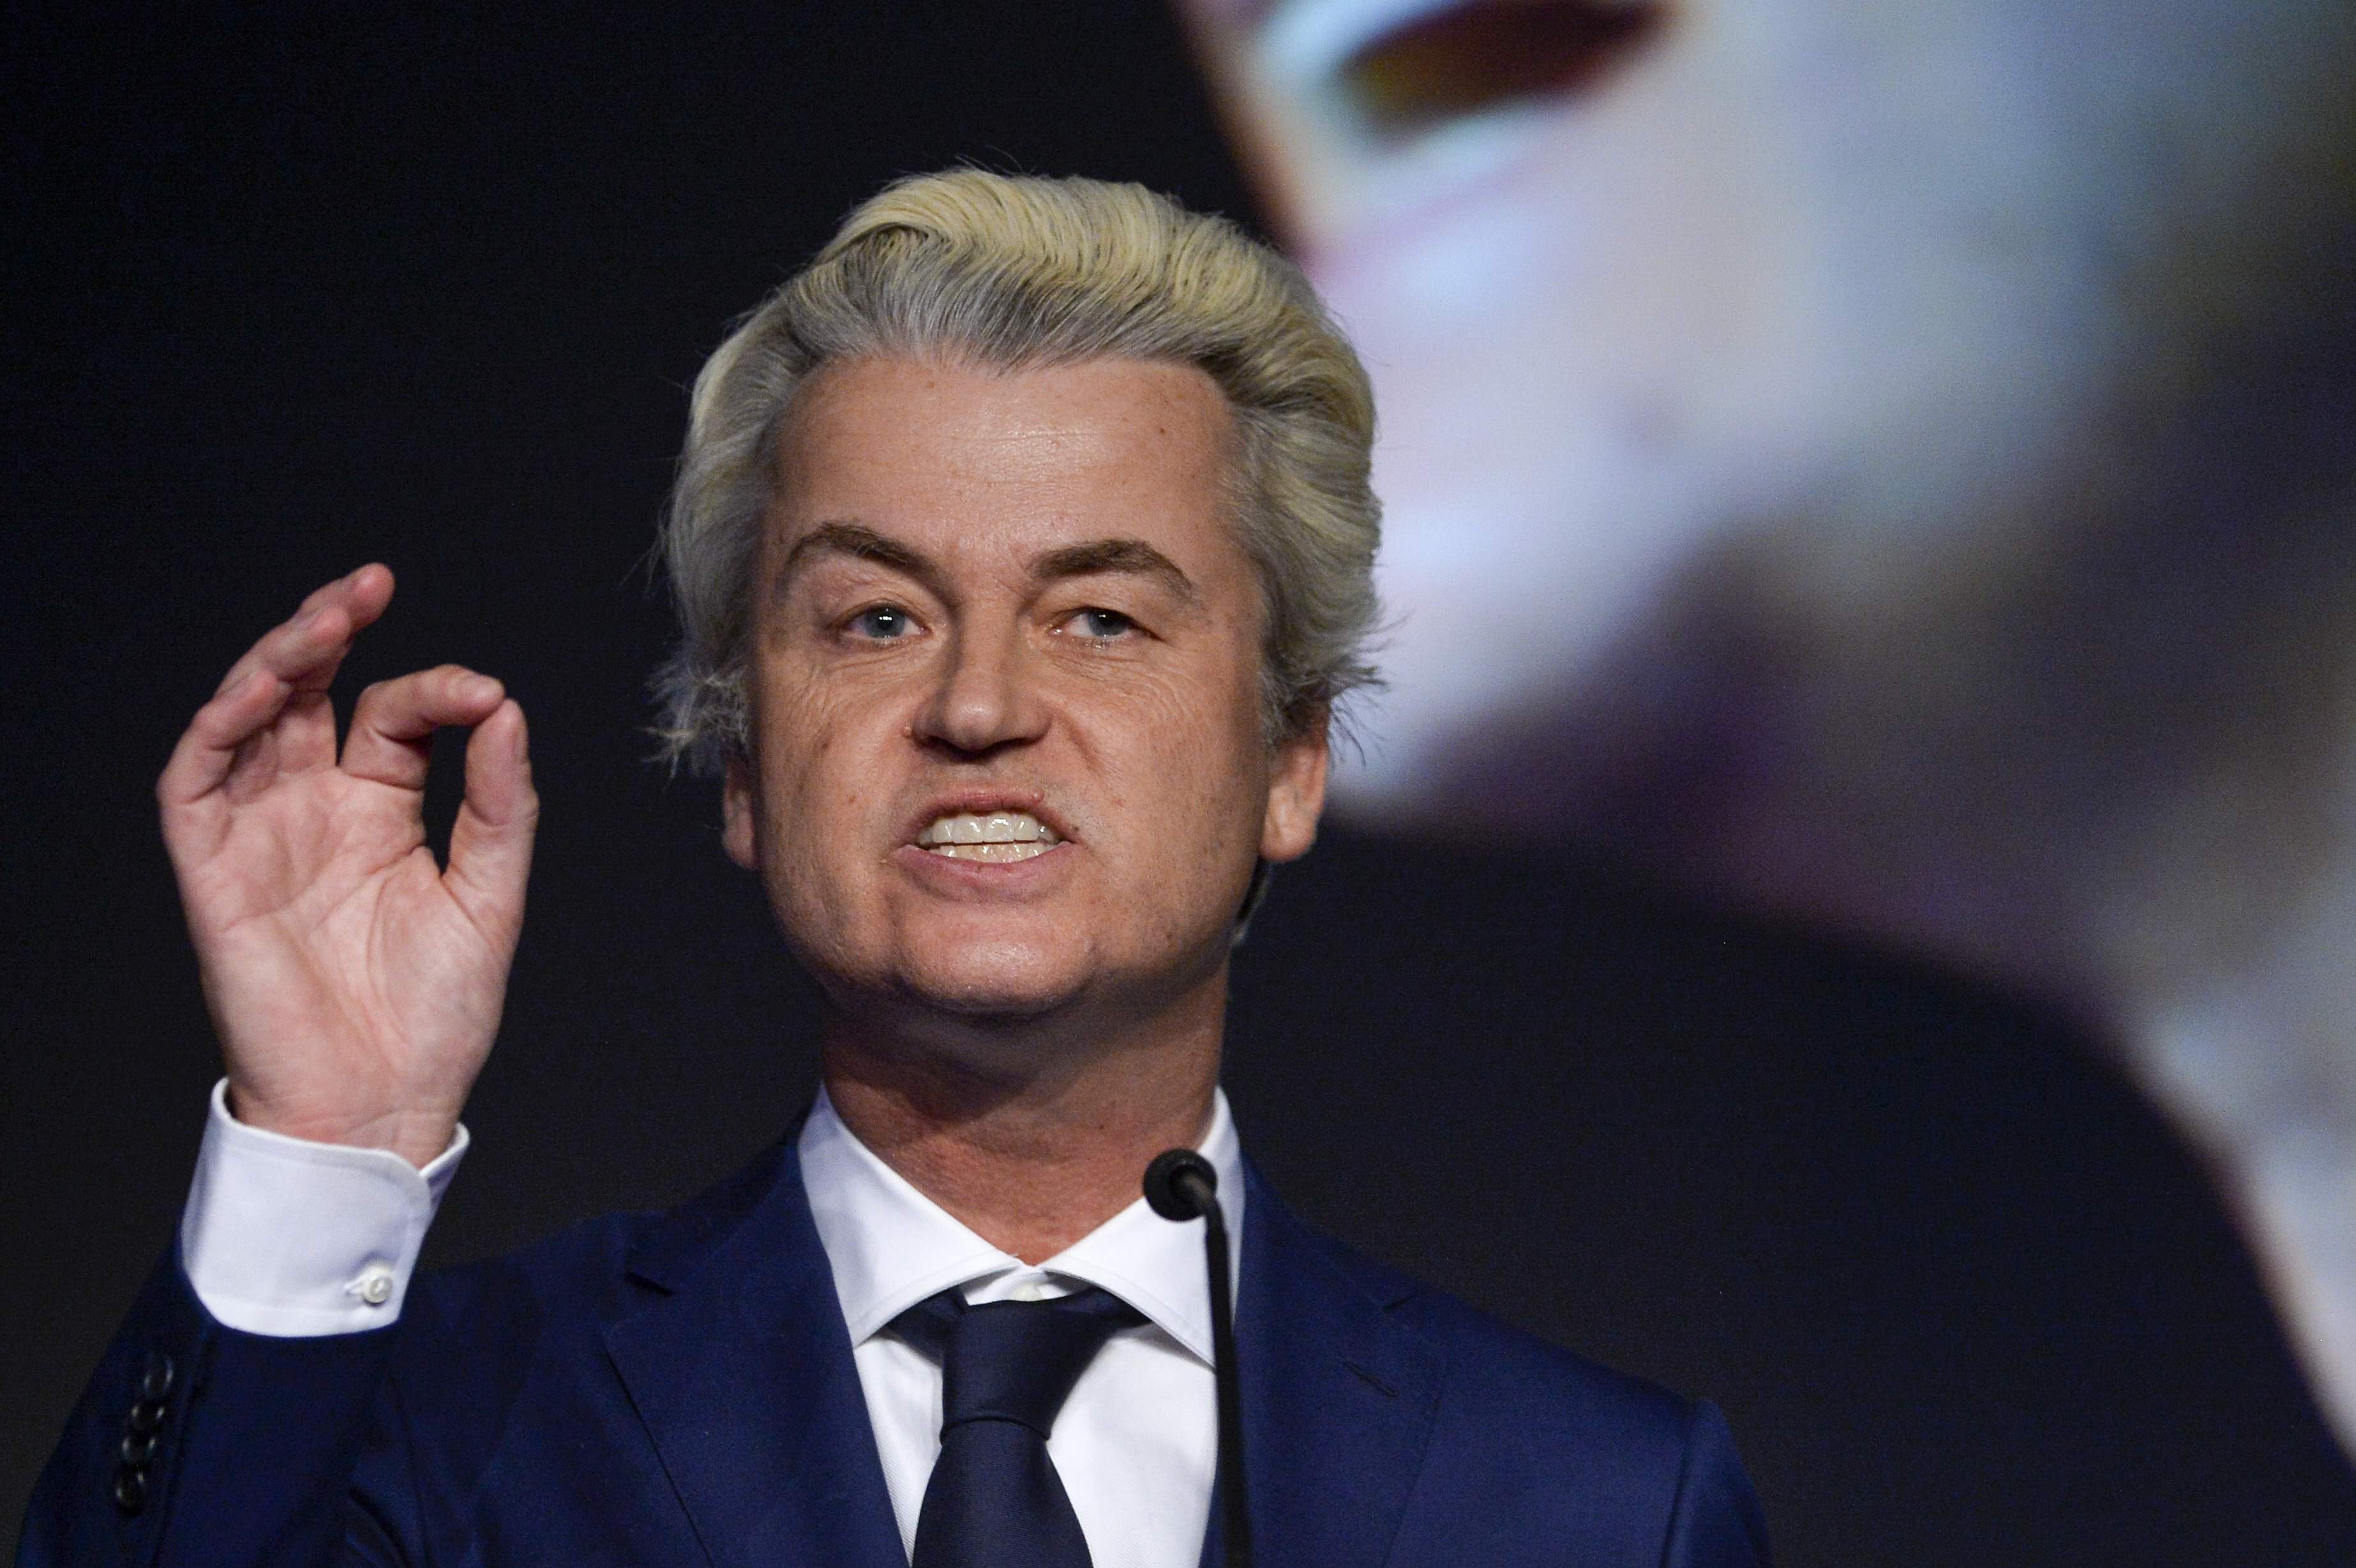 Els Països Baixos confirmen l'auge de l'extrema dreta a les eleccions europees, segons els sondejos